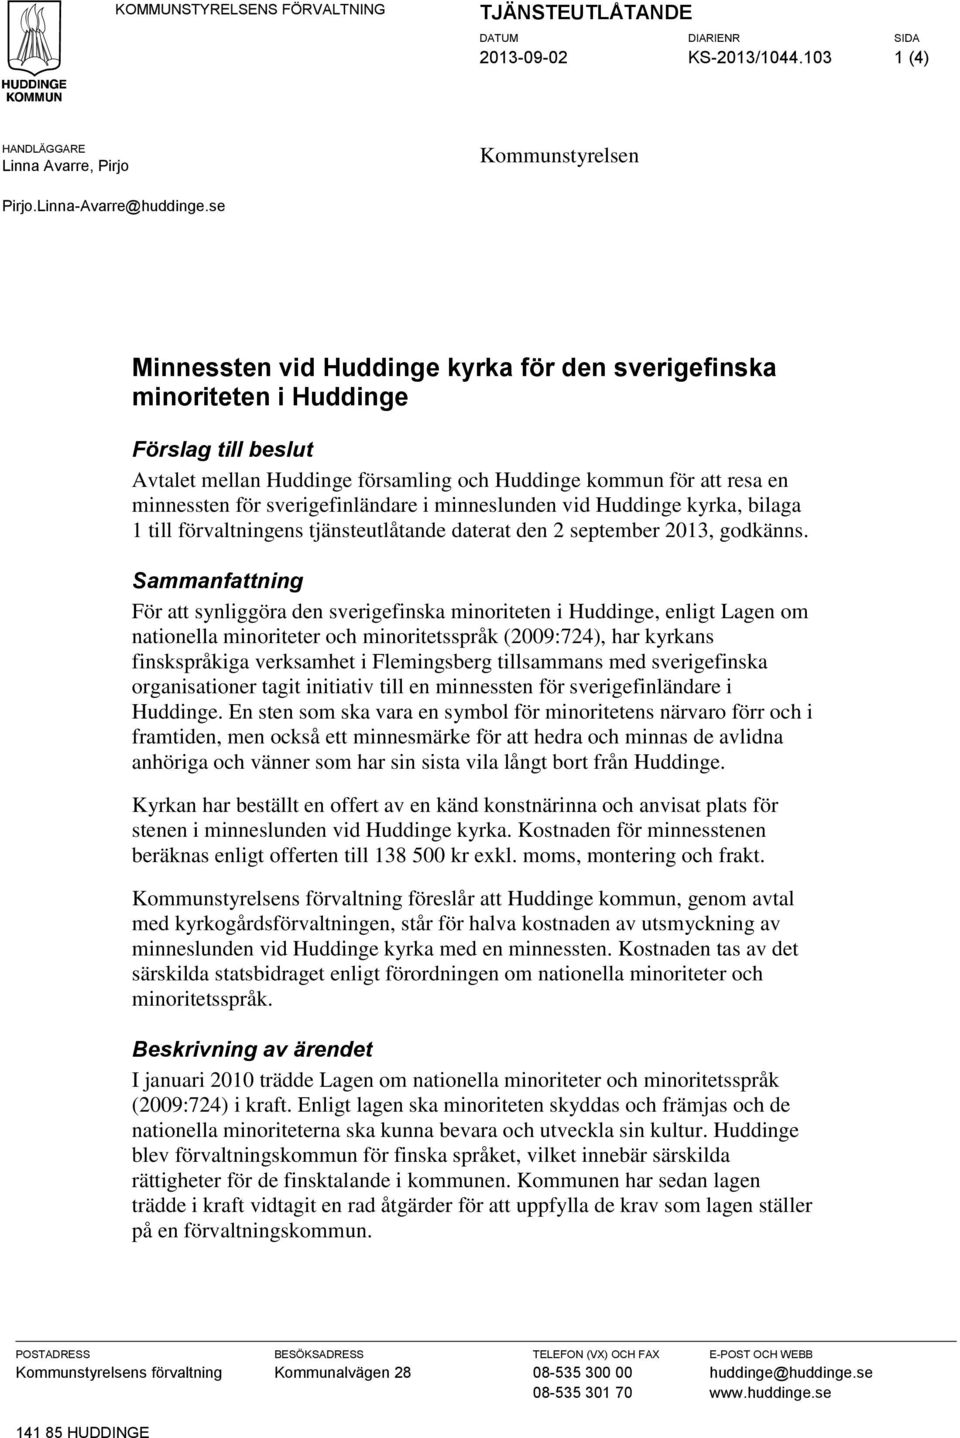 sverigefinländare i minneslunden vid Huddinge kyrka, bilaga 1 till förvaltningens tjänsteutlåtande daterat den 2 september 2013, godkänns.